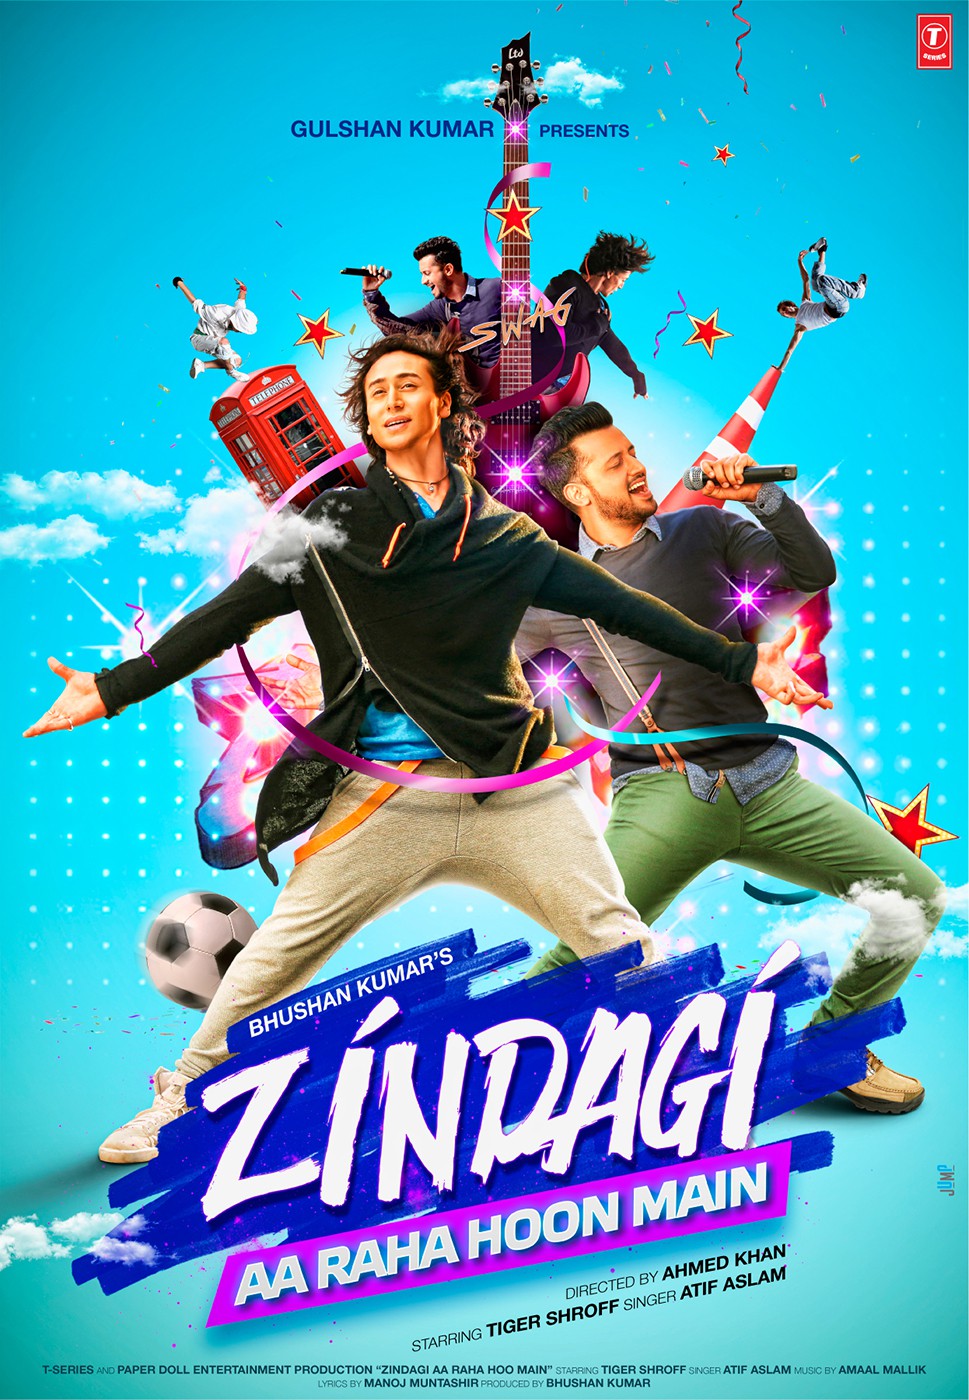 Extra Large Movie Poster Image for Zindagi Aa Raha Hoon Main 